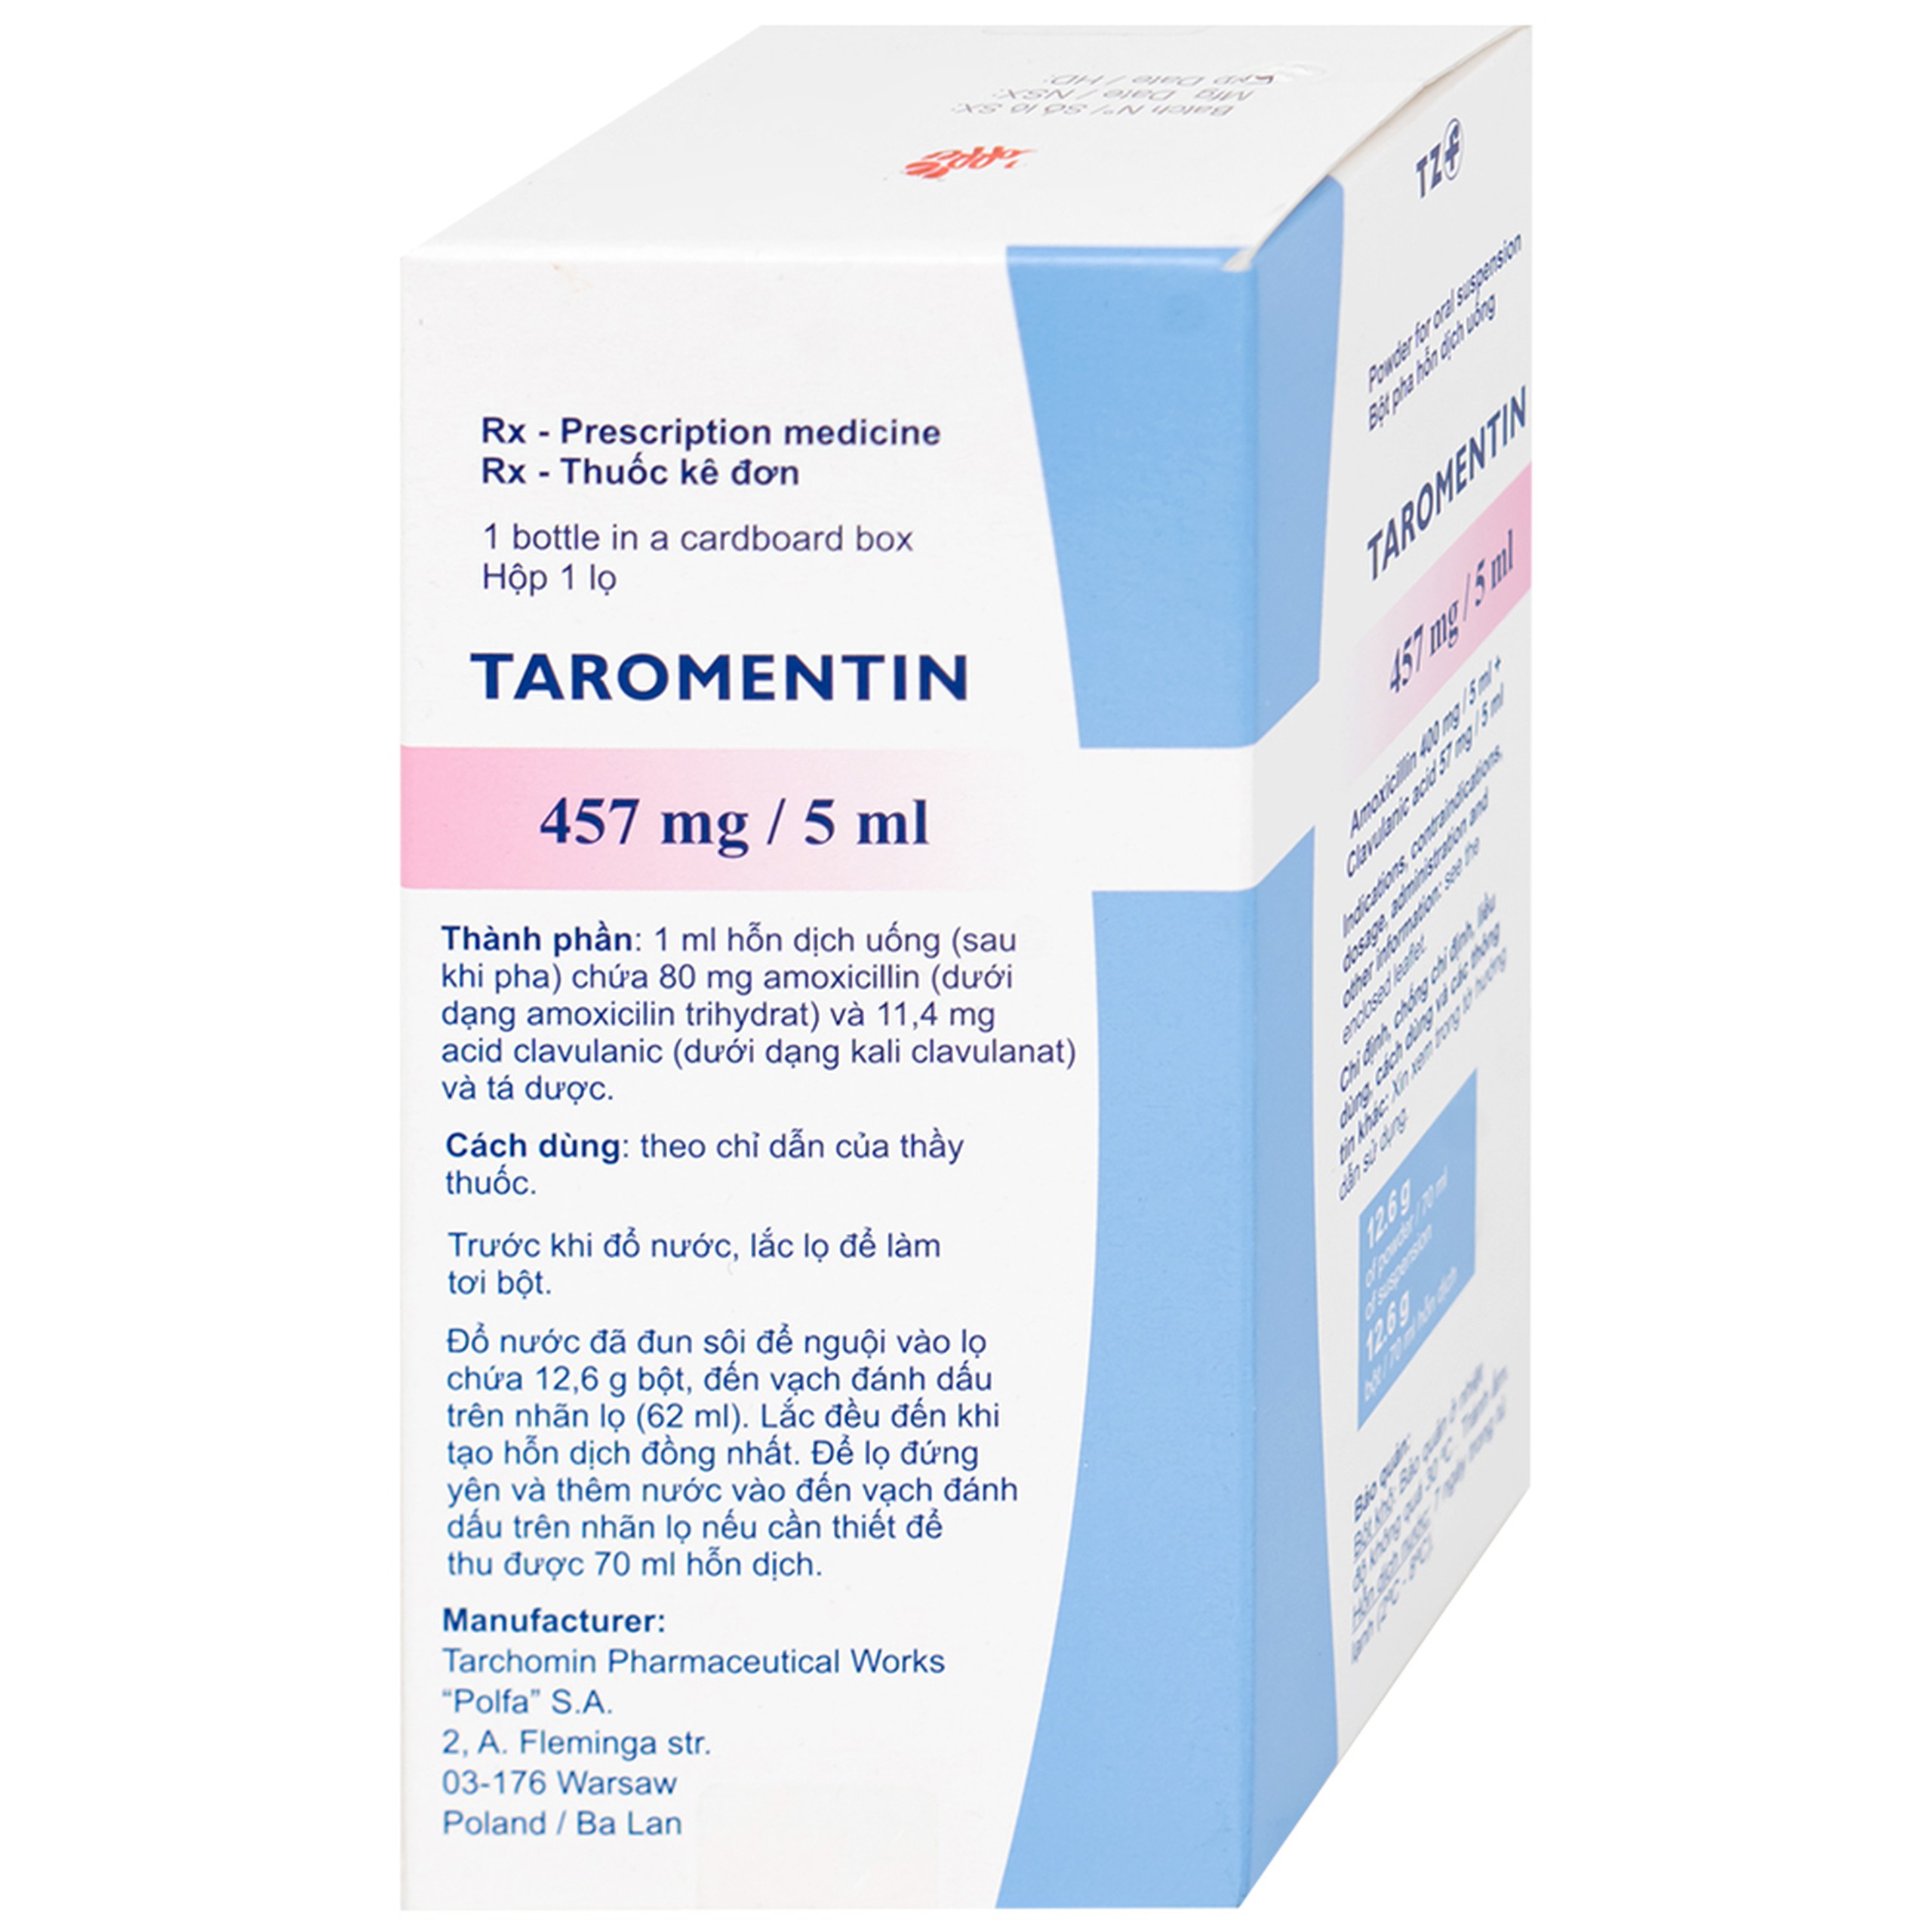 Bột hỗn dịch uống Taromentin 457mg/5ml điều trị nhiễm trùng viêm xoang, tai giữa, đường hô hấp (12.6g)